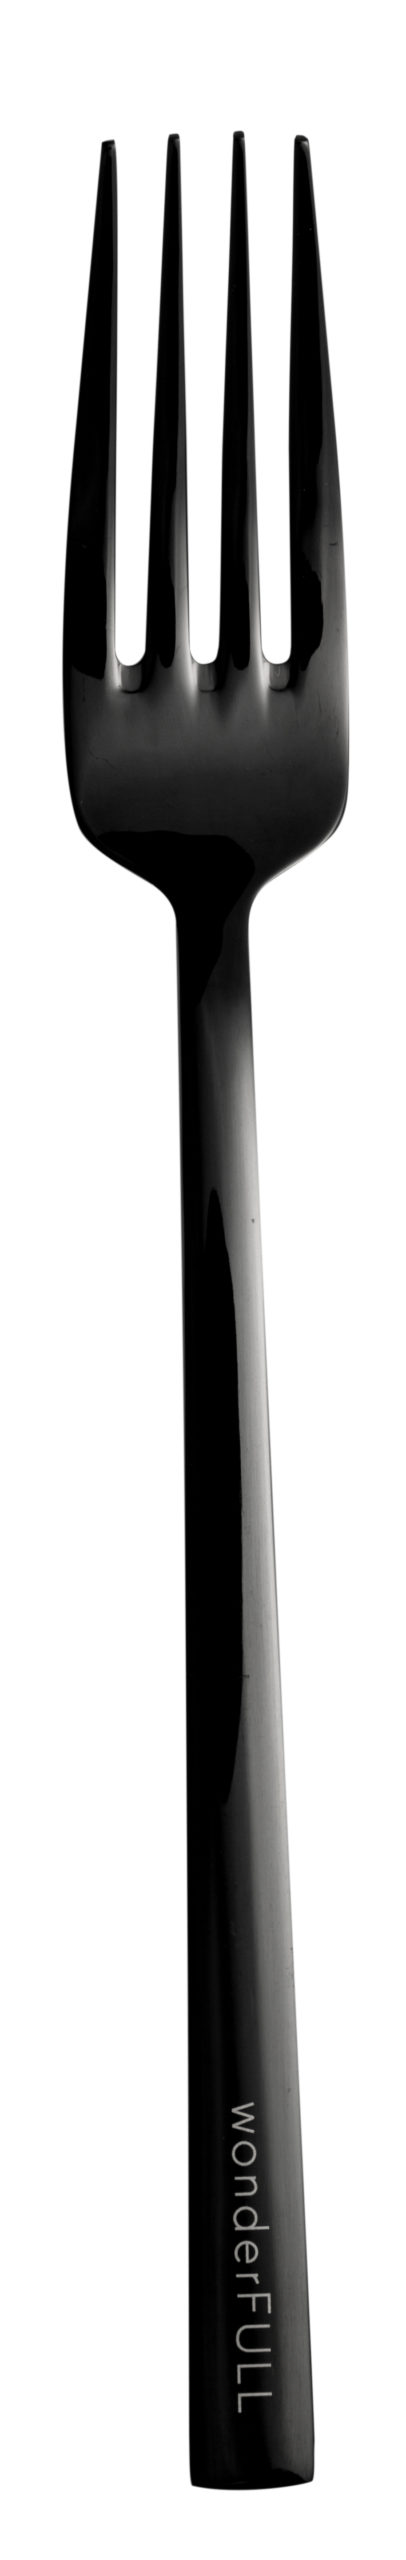 Nádherný nadčasový dizajn nerezového príborového setu v čiernej farbe s jemným gravírovaným nápisom na rúčke príboru pozostáva z 5 ks.